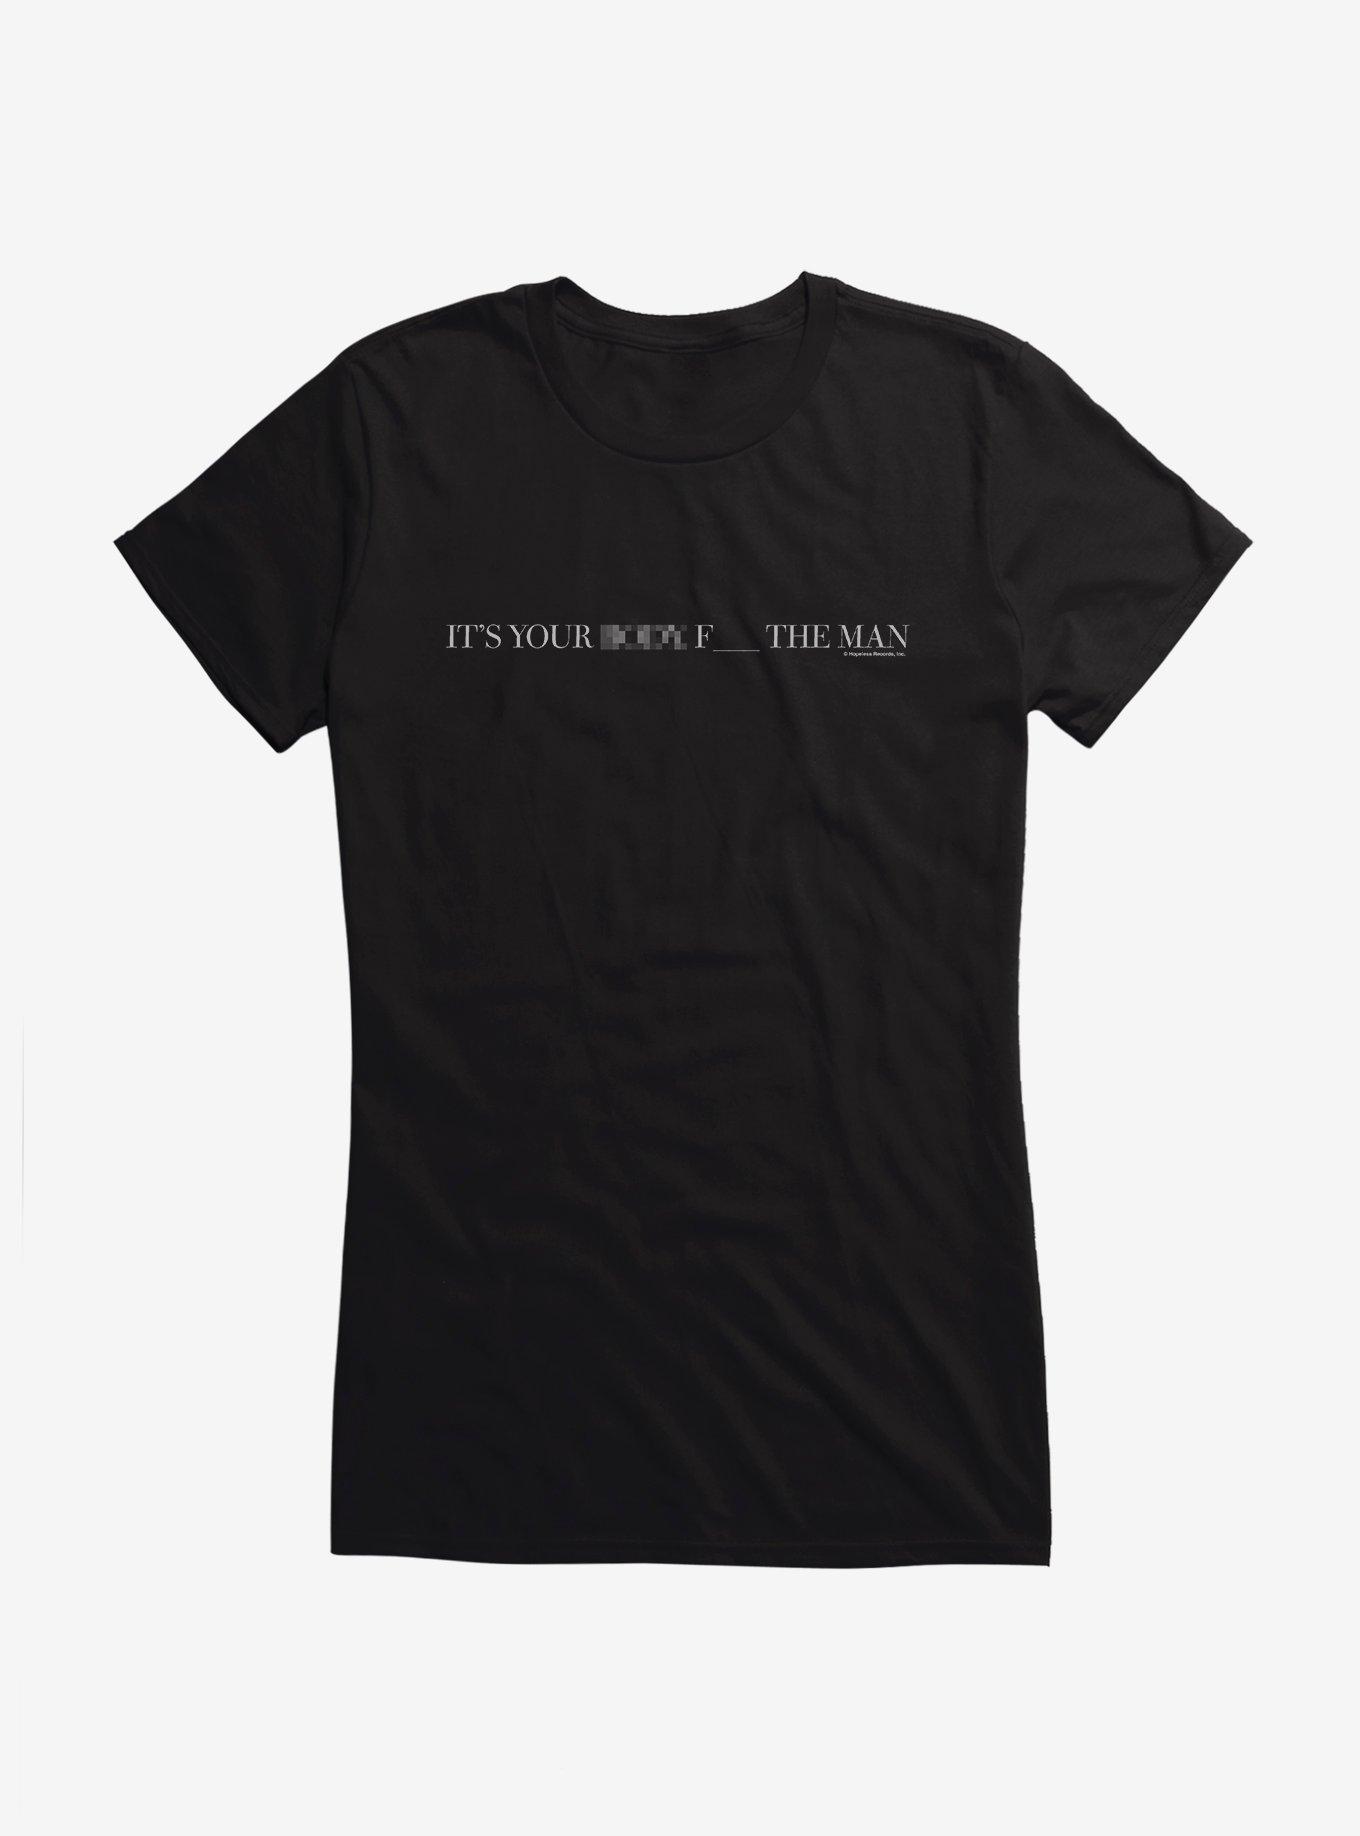 PVRIS Goddess Girls T-Shirt